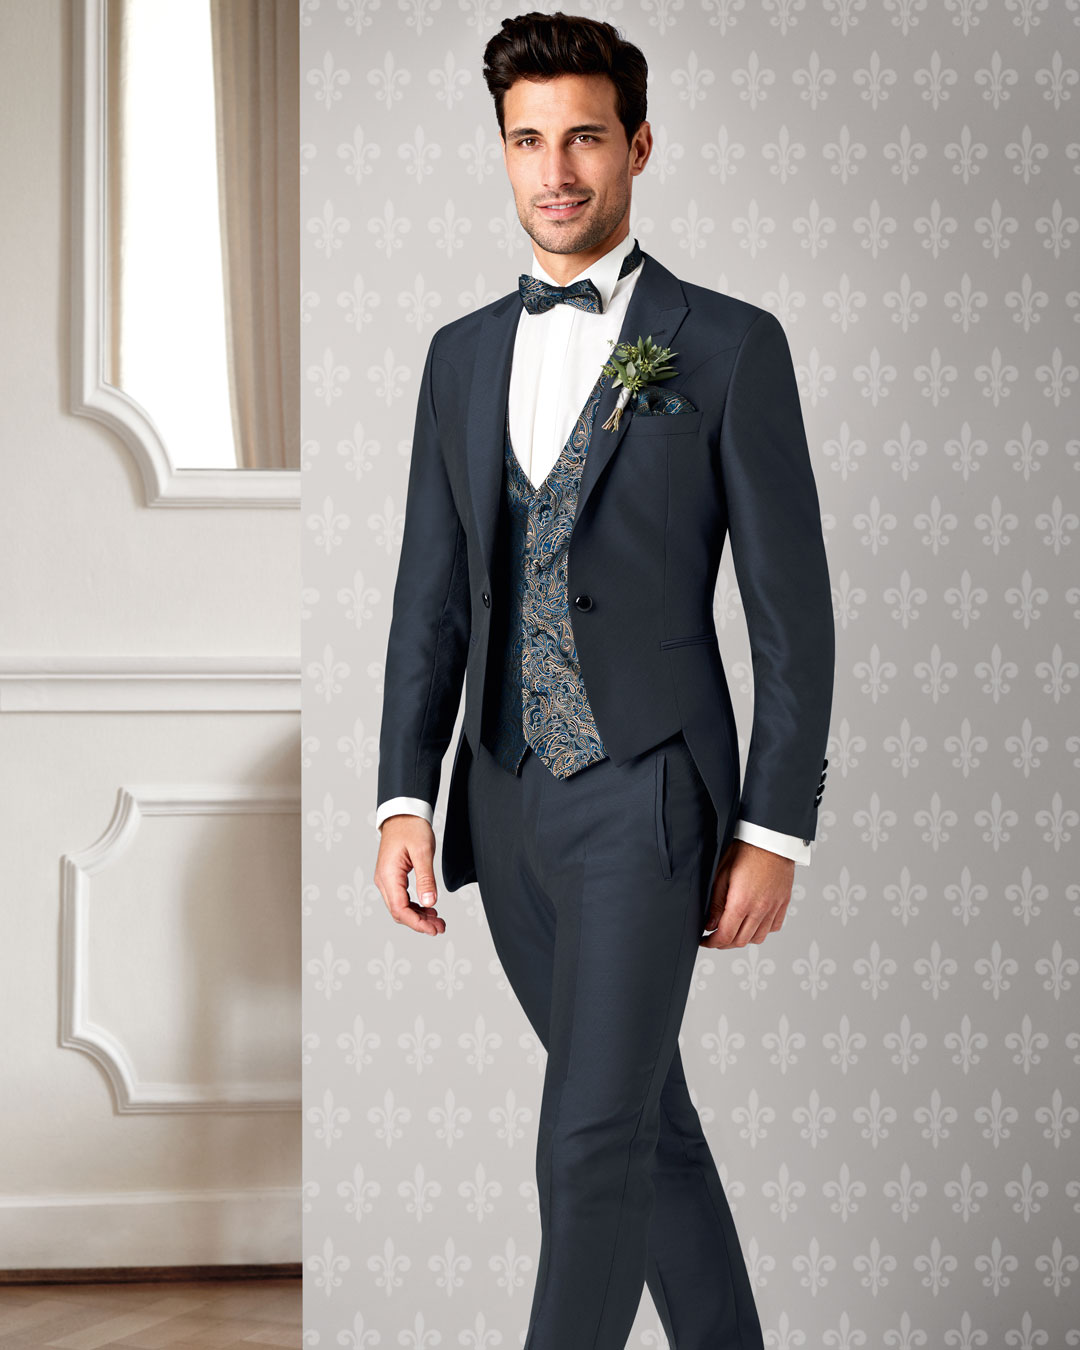 Tziacco - Der Anzug zur Hochzeit